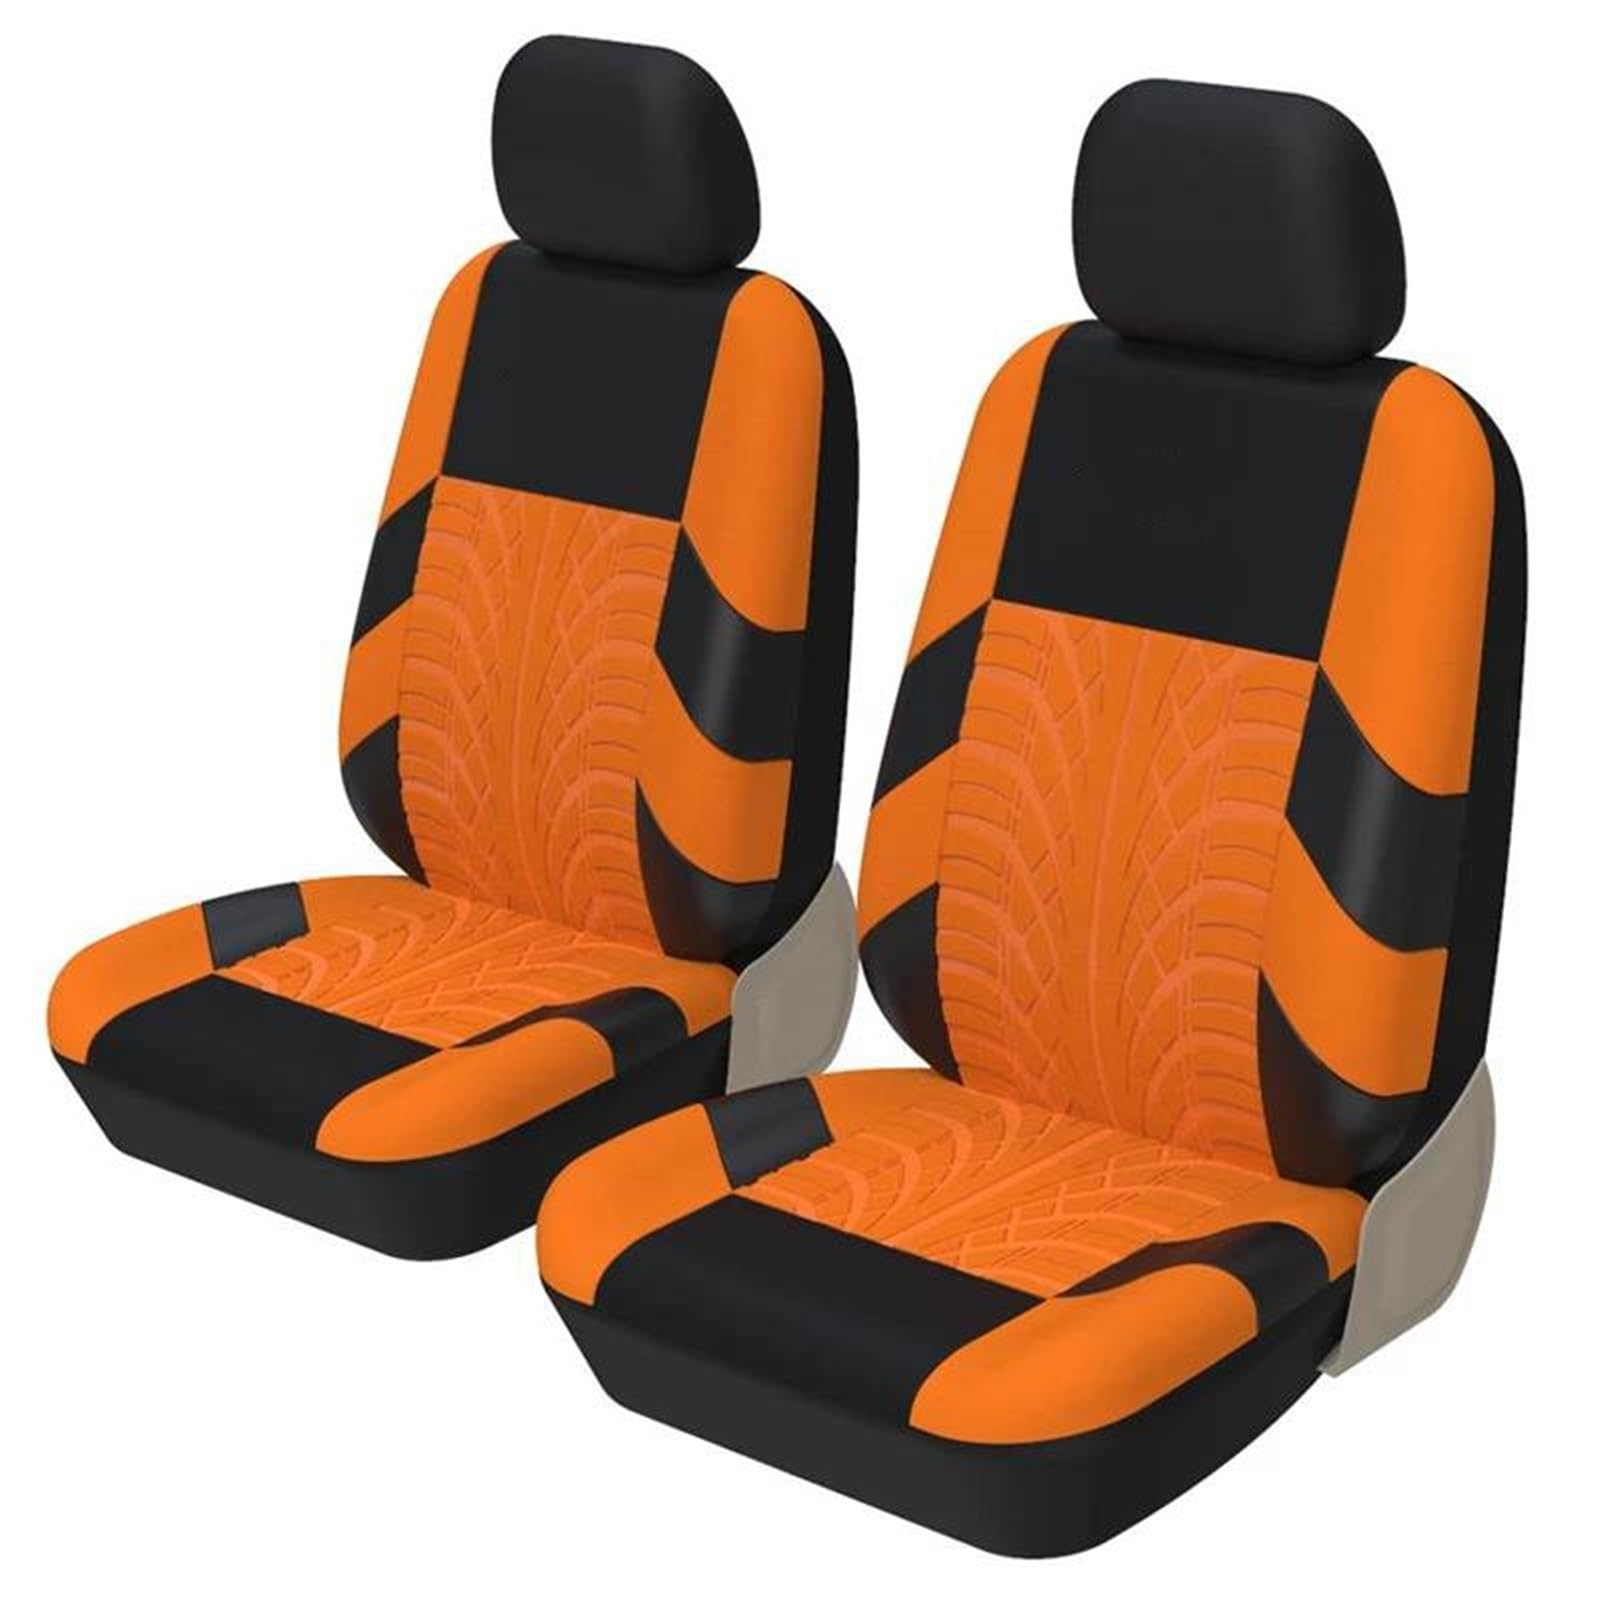 DZSQOSJB SitzbezüGe Auto 2 PCS Vorne Autositzbezüge Universal Sitz Schutz Airbag Kompatibel Für Toyota Für Corolla Für Lancer 9 Vordersitze(Orange) von DZSQOSJB